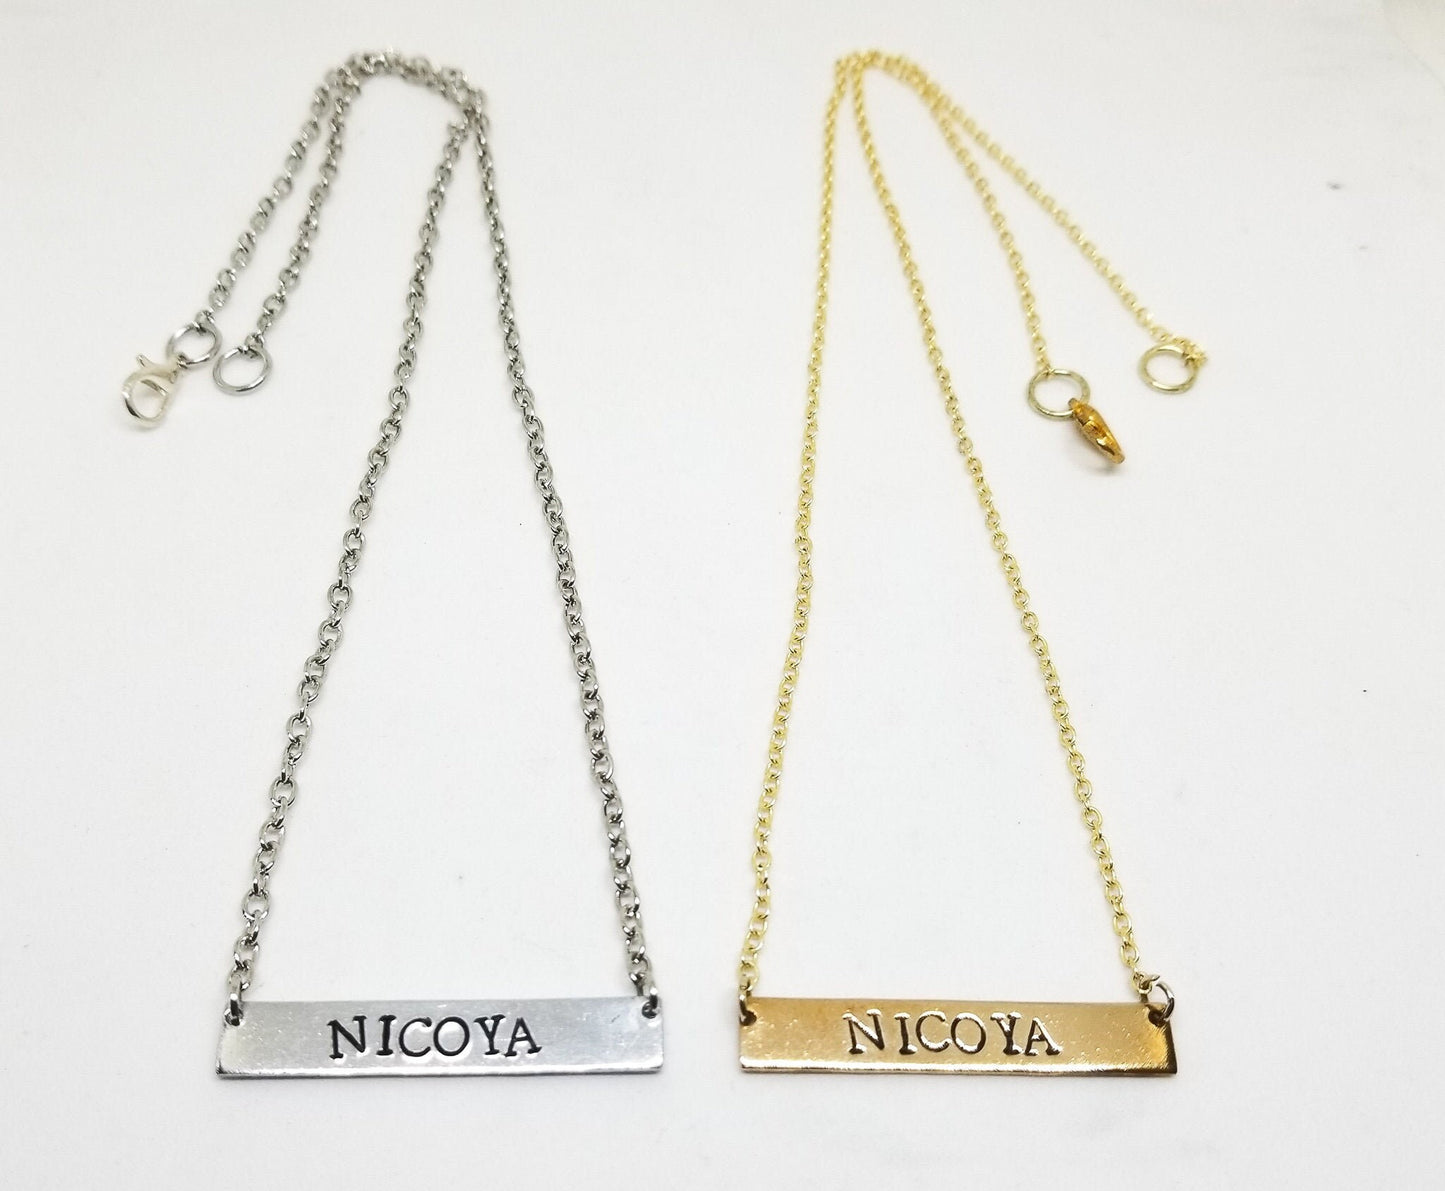 Nicoya bar necklace